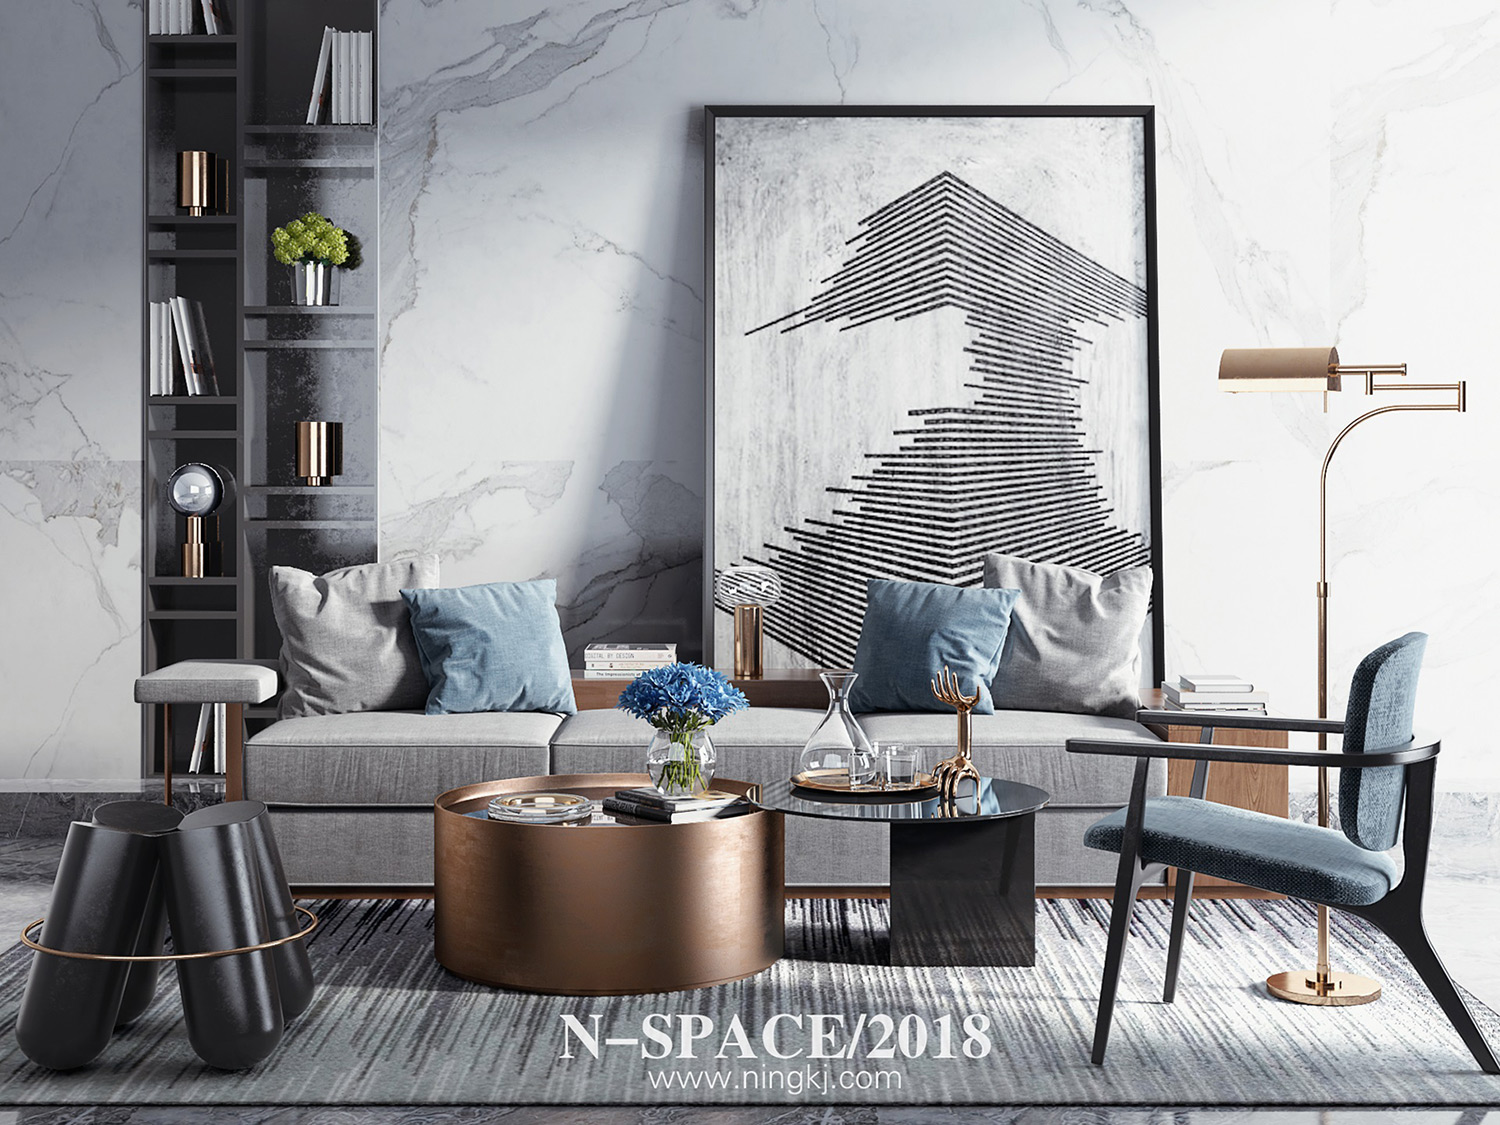 【宁空间印象】N-SPACE/2018新中式软装摆件 